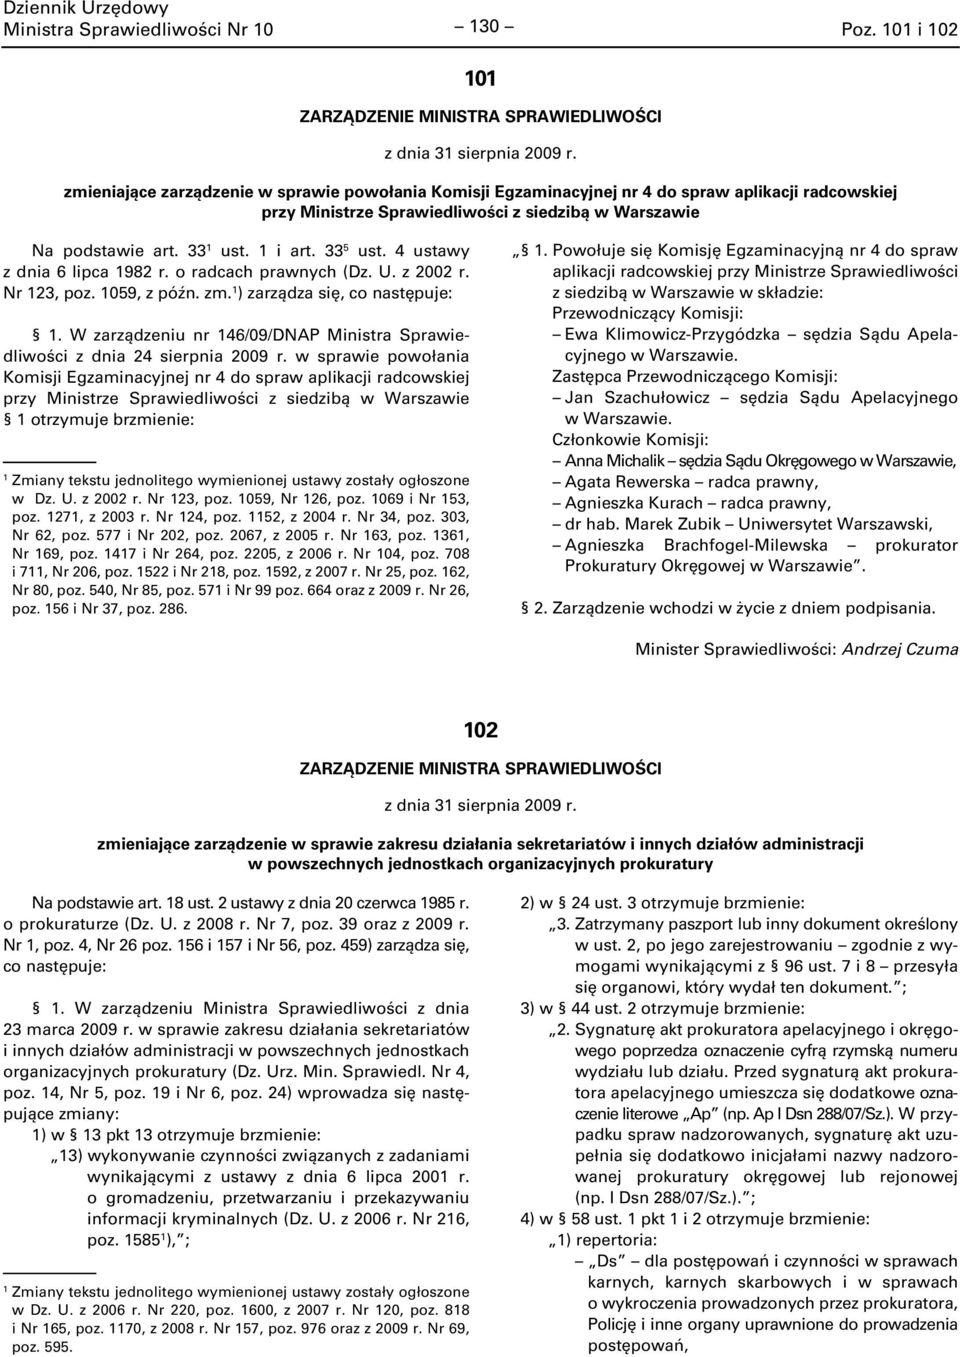 W zarządzeniu nr 46/09/DNAP Ministra Sprawiedliwości z dnia 24 sierpnia w sprawie powołania Komisji Egzaminacyjnej nr 4 do spraw aplikacji radcowskiej otrzymuje brzmienie: w Dz. U. z 2002 r.